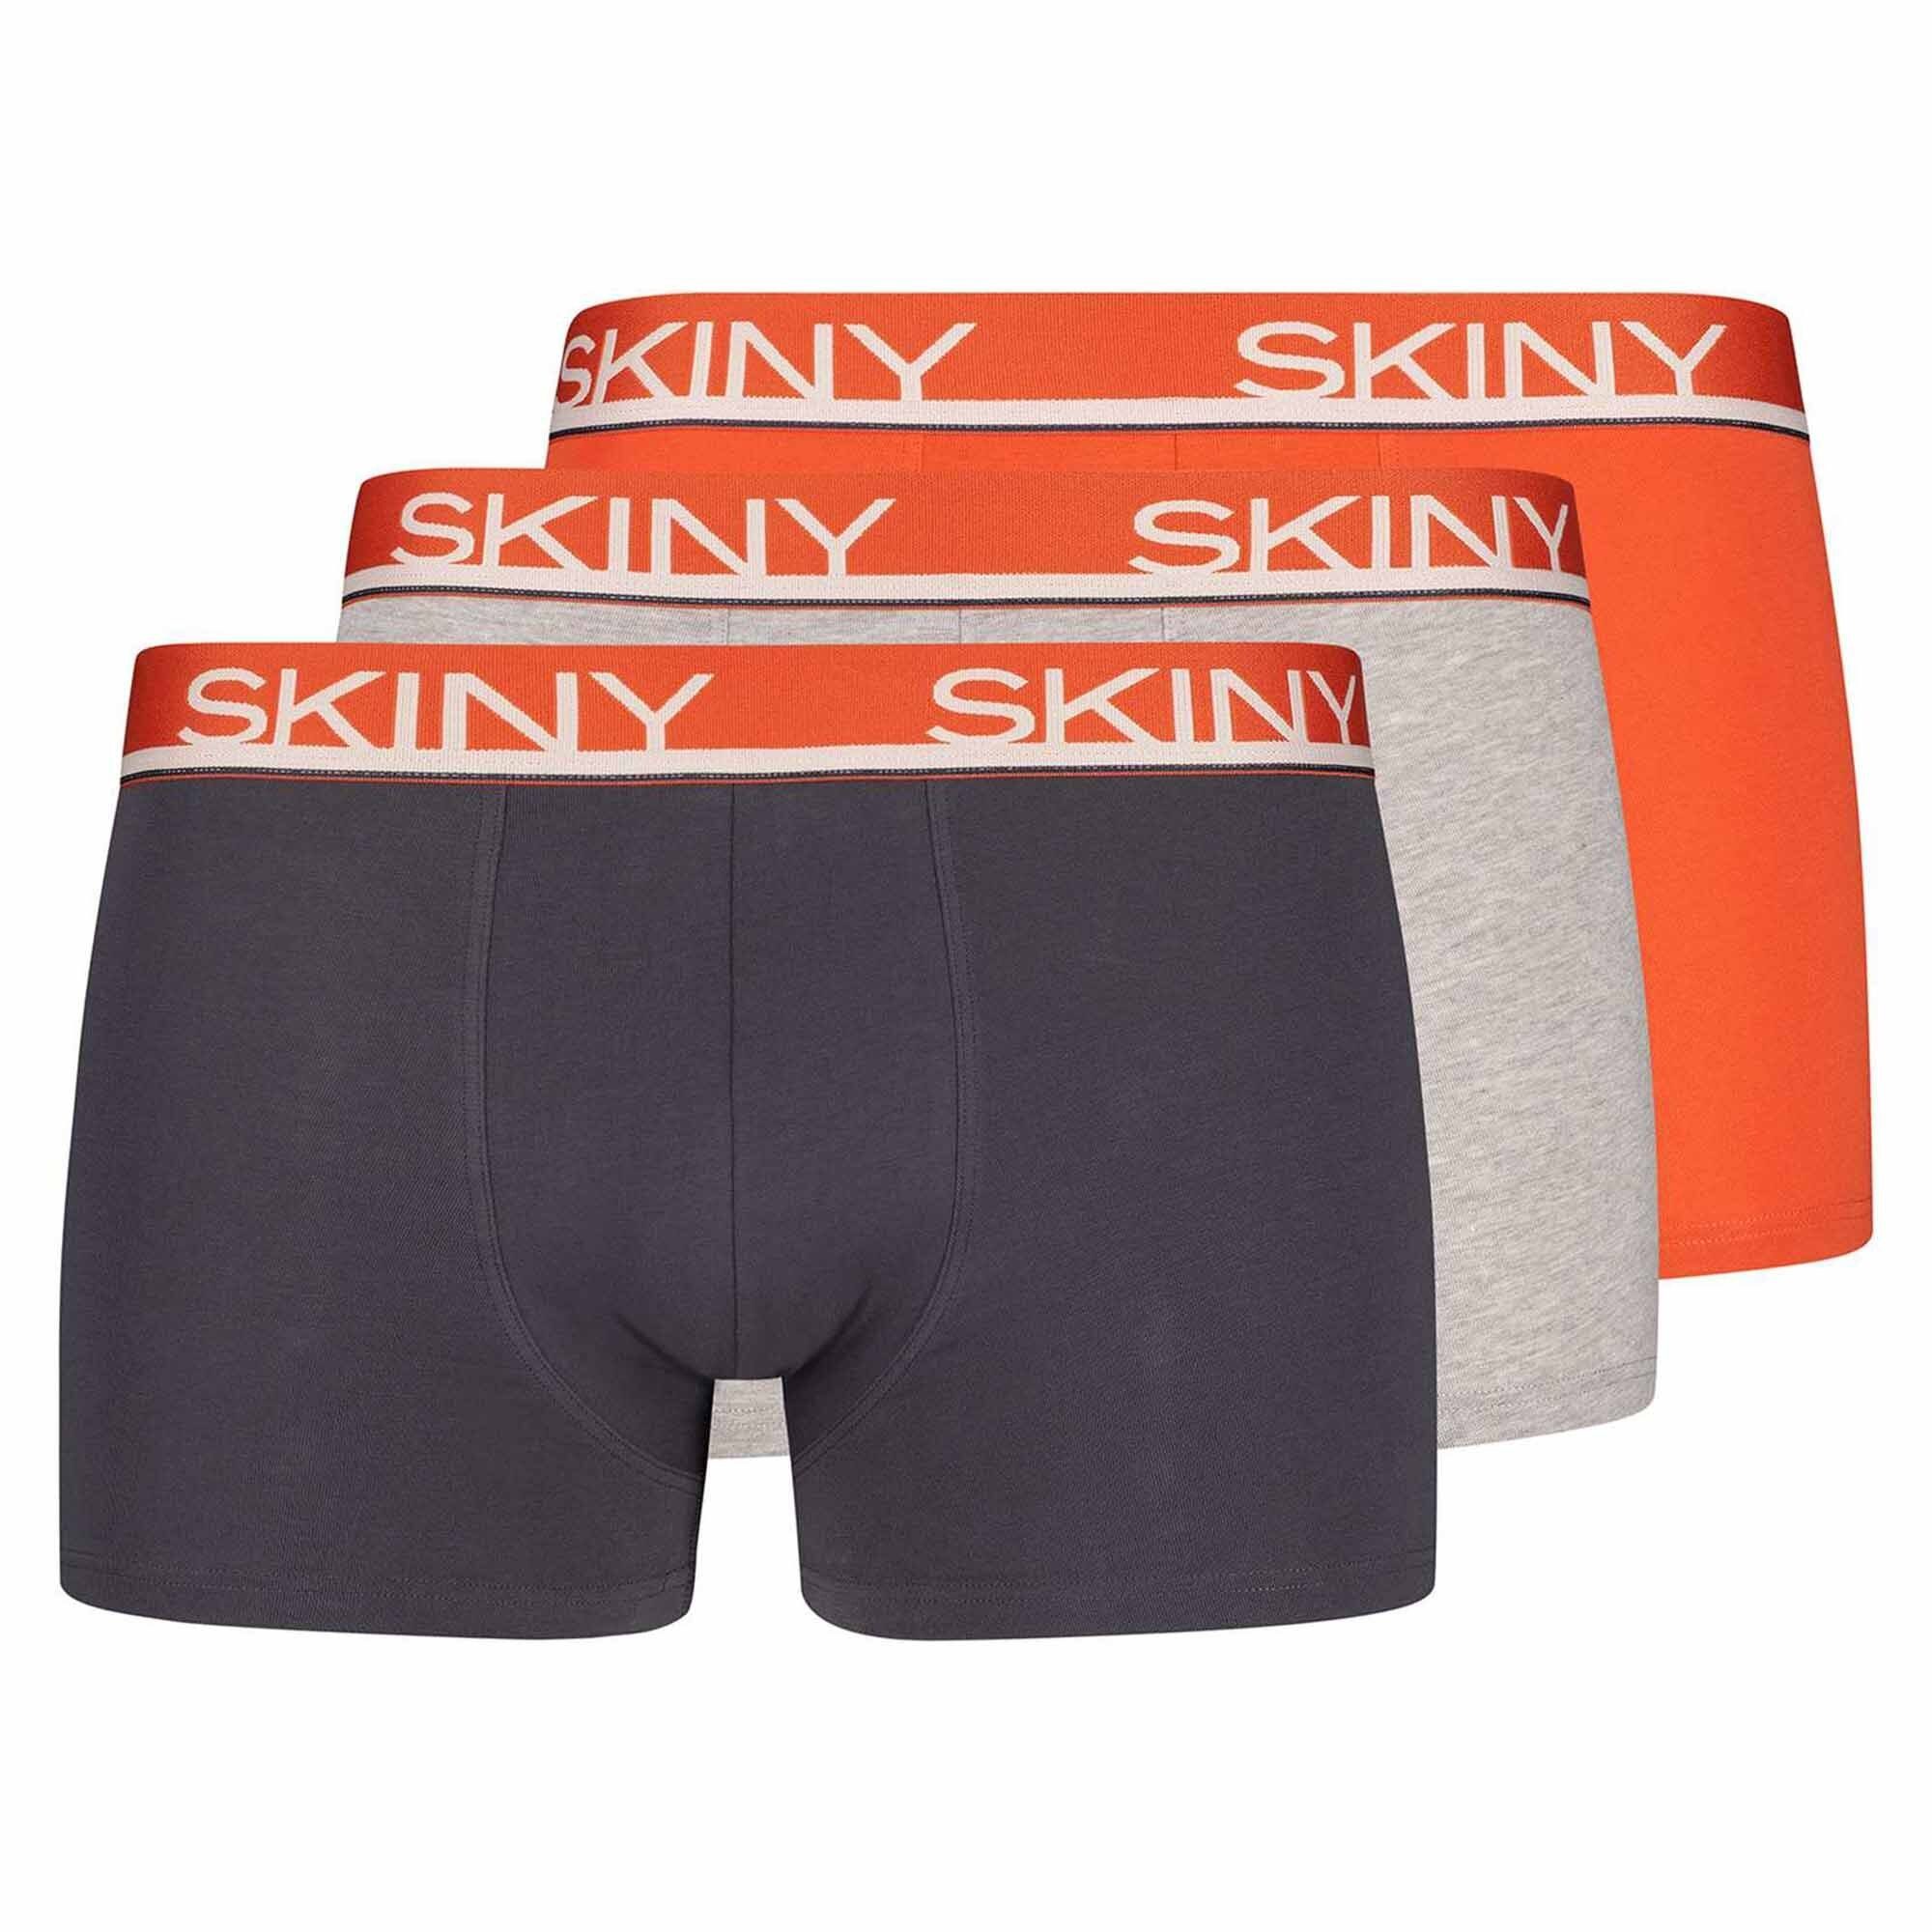 Skiny Boxer Trunks, Pack 3er Grau/Orange Herren - Shorts Boxer Pants